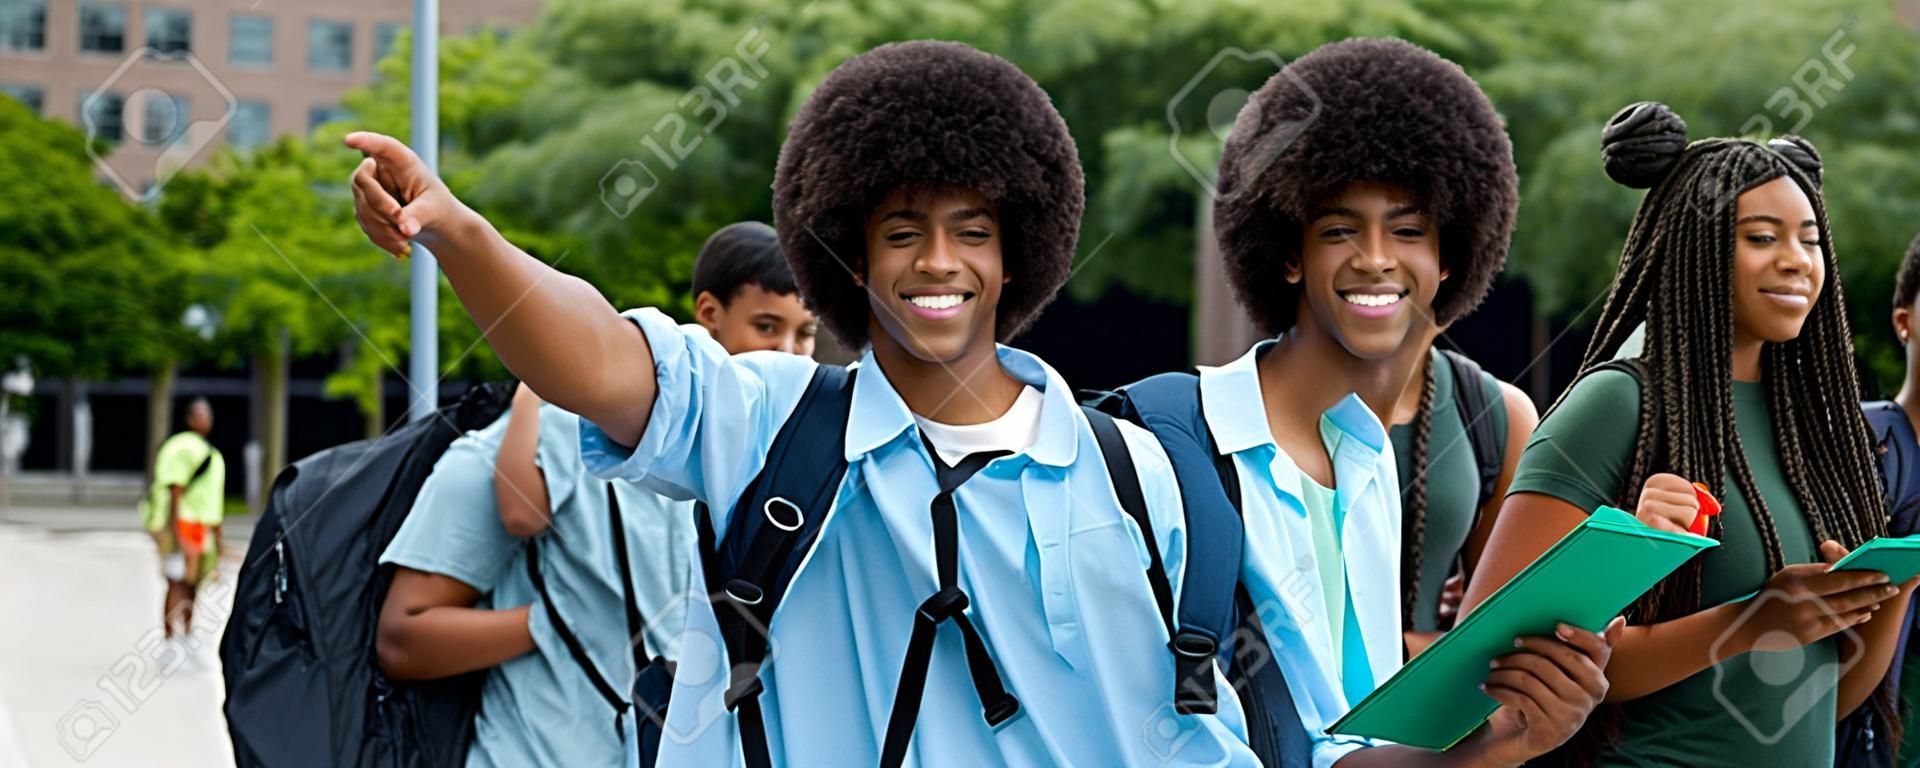 Studente maschio afroamericano incoraggiante con un gruppo di giovani adulti